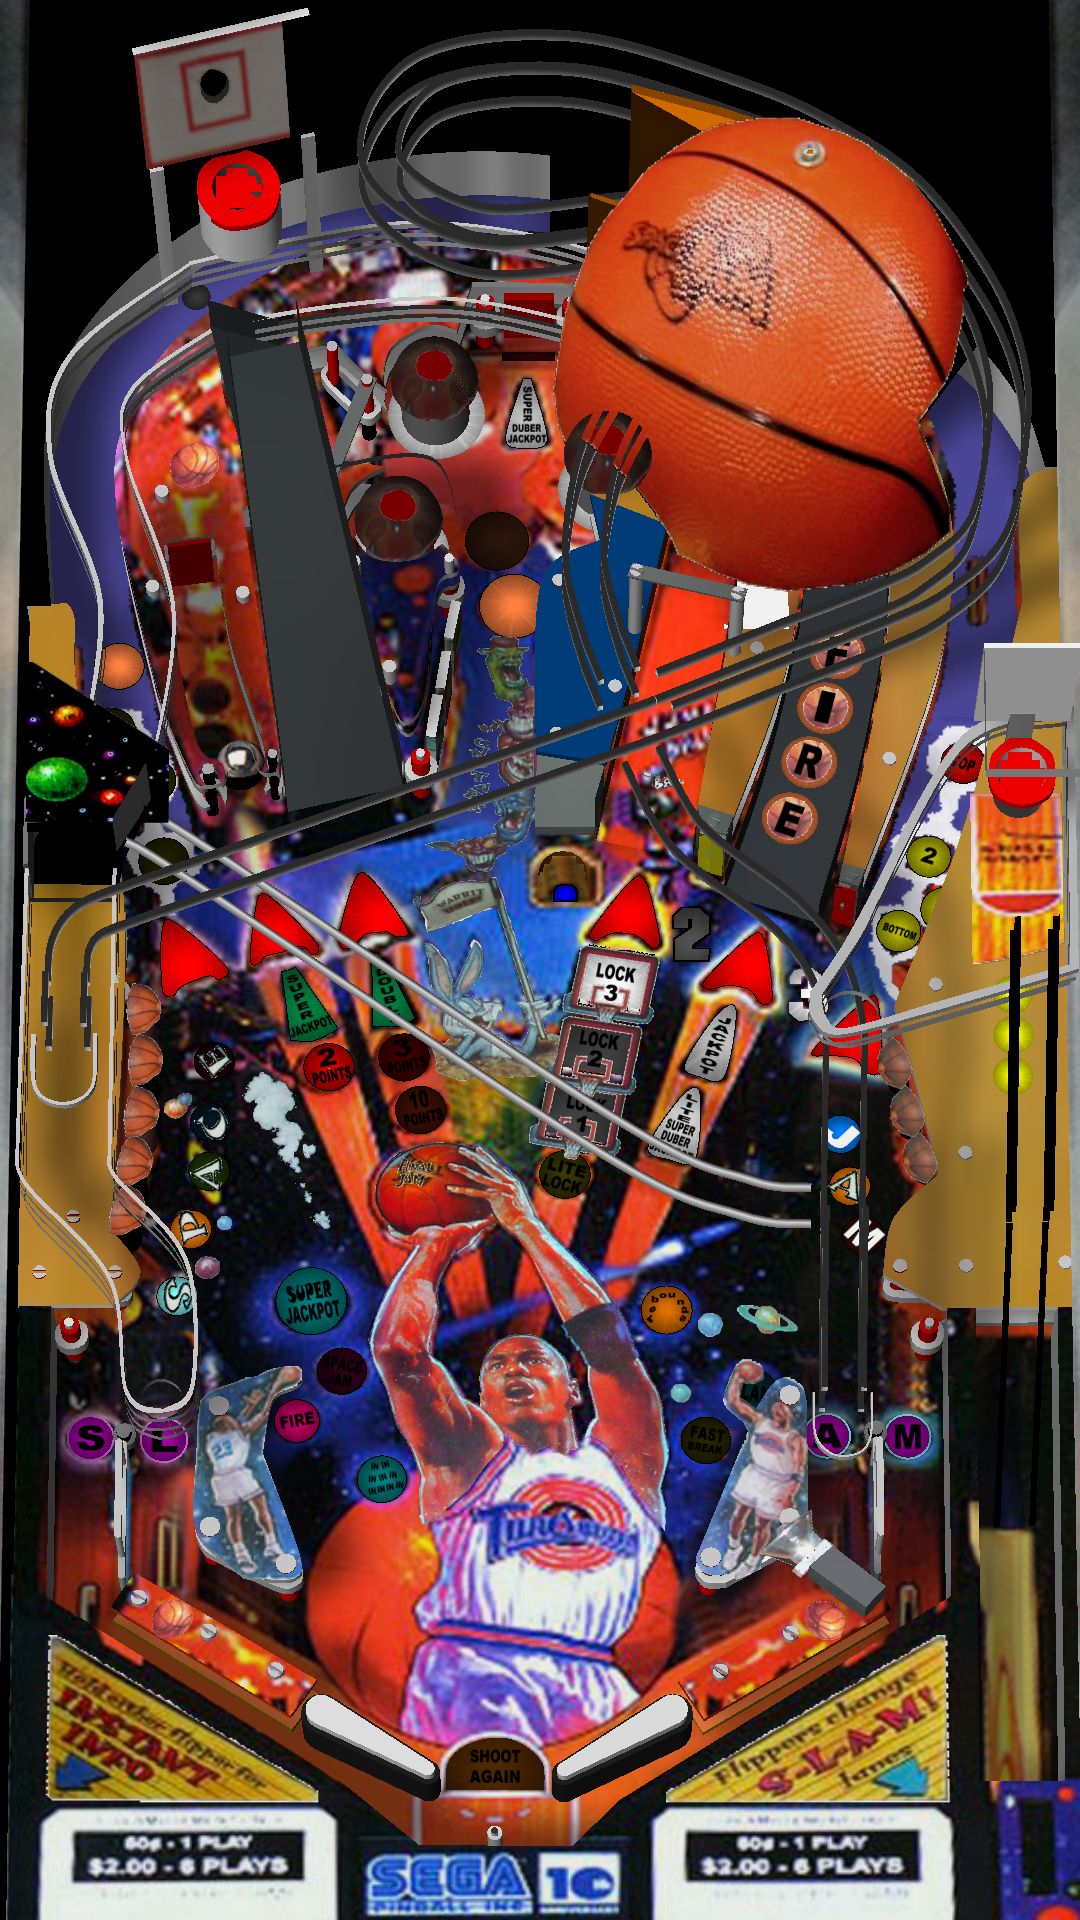 1996 Sega Pinball Space Jam Game Flyer 